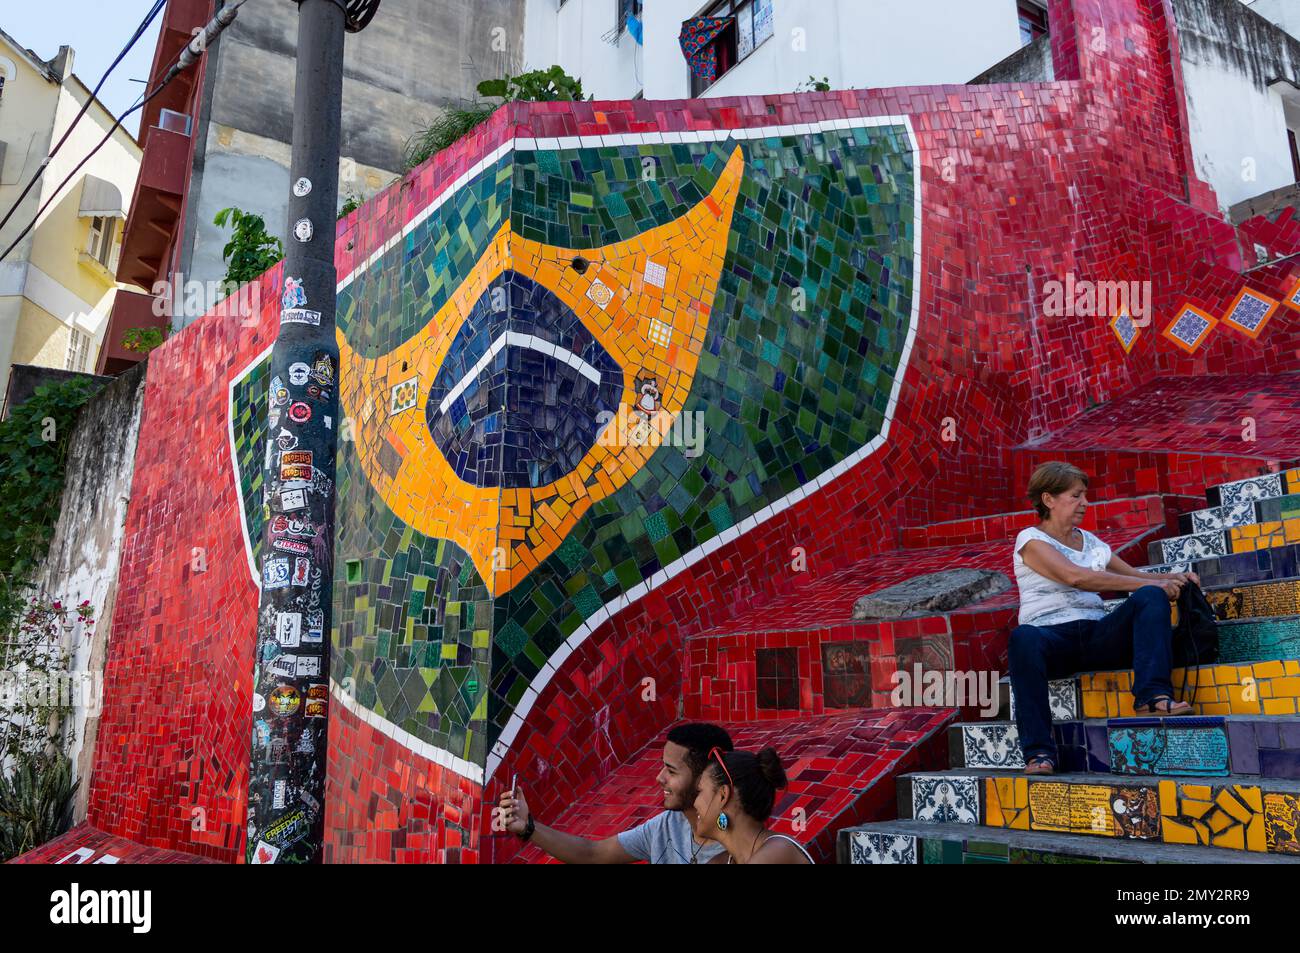 Les mosaïques du drapeau brésilien à Selaron Steps dans le quartier de Santa Teresa à proximité de la rue Ladeira de Santa Teresa en été après-midi ensoleillé Banque D'Images